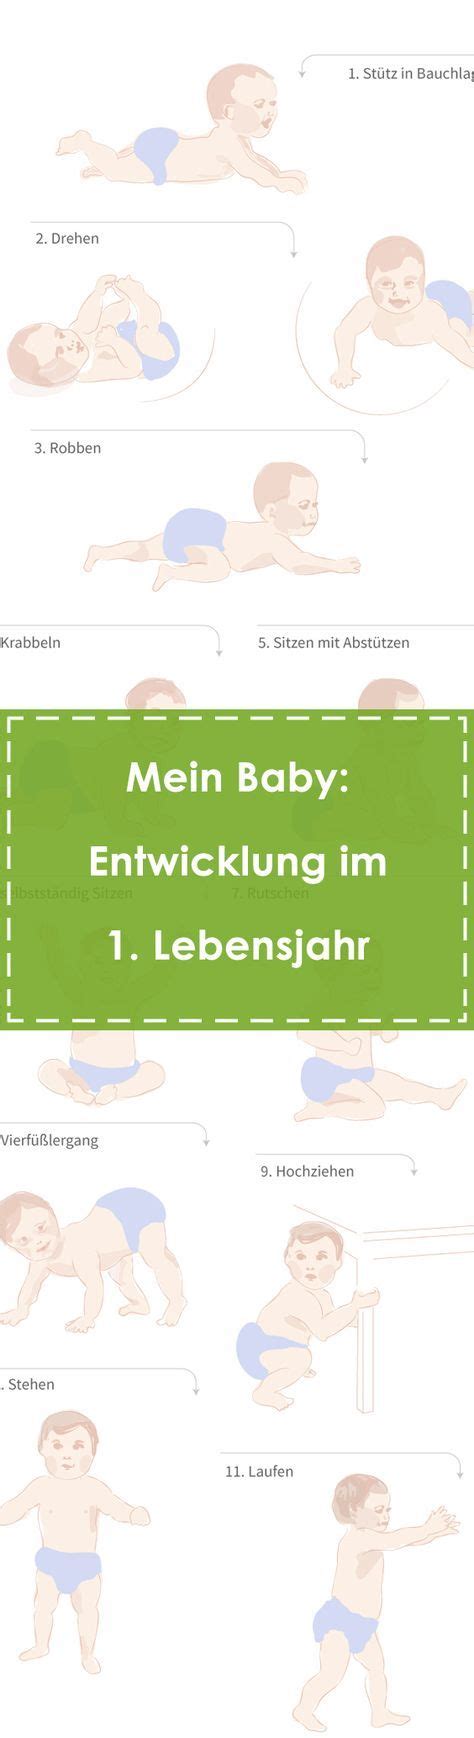 Mein Baby Onmedade Entwicklung Baby Babygesundheit Babyentwicklung